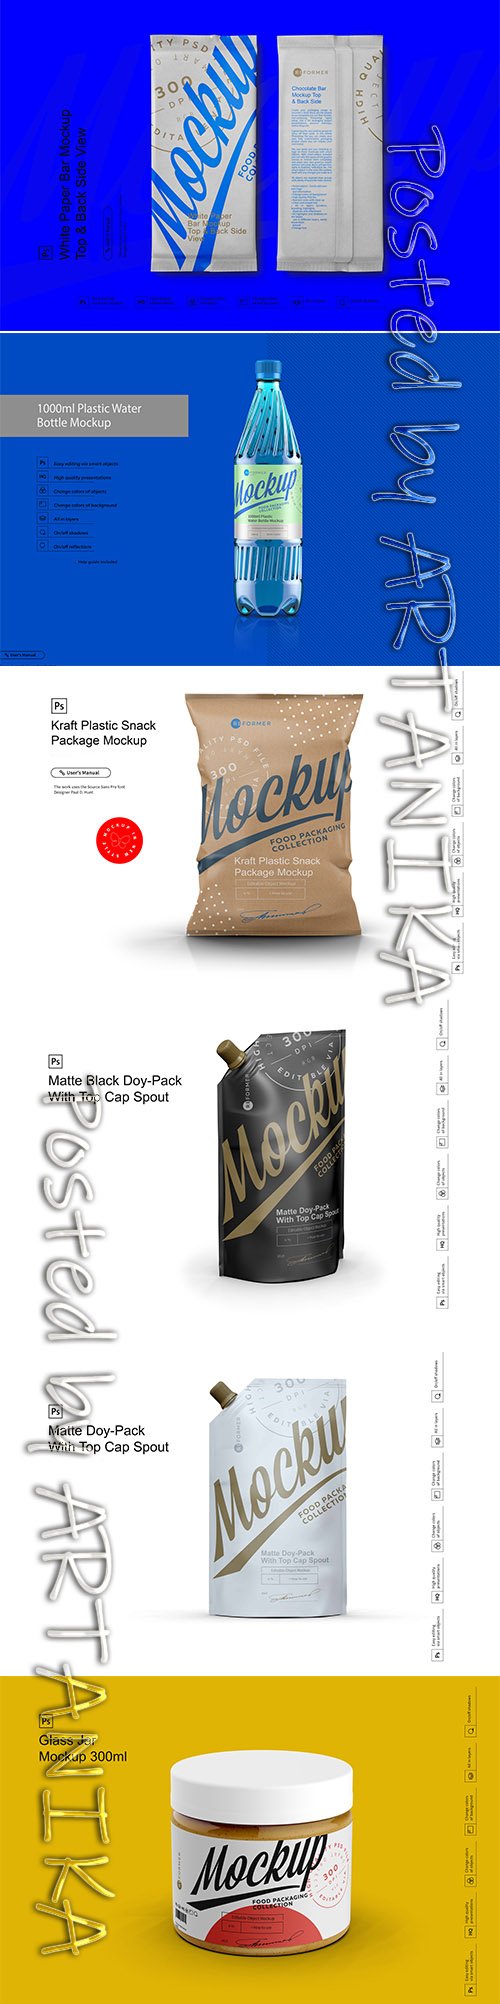 Food Packaging PSD Mockup Set Vol 2